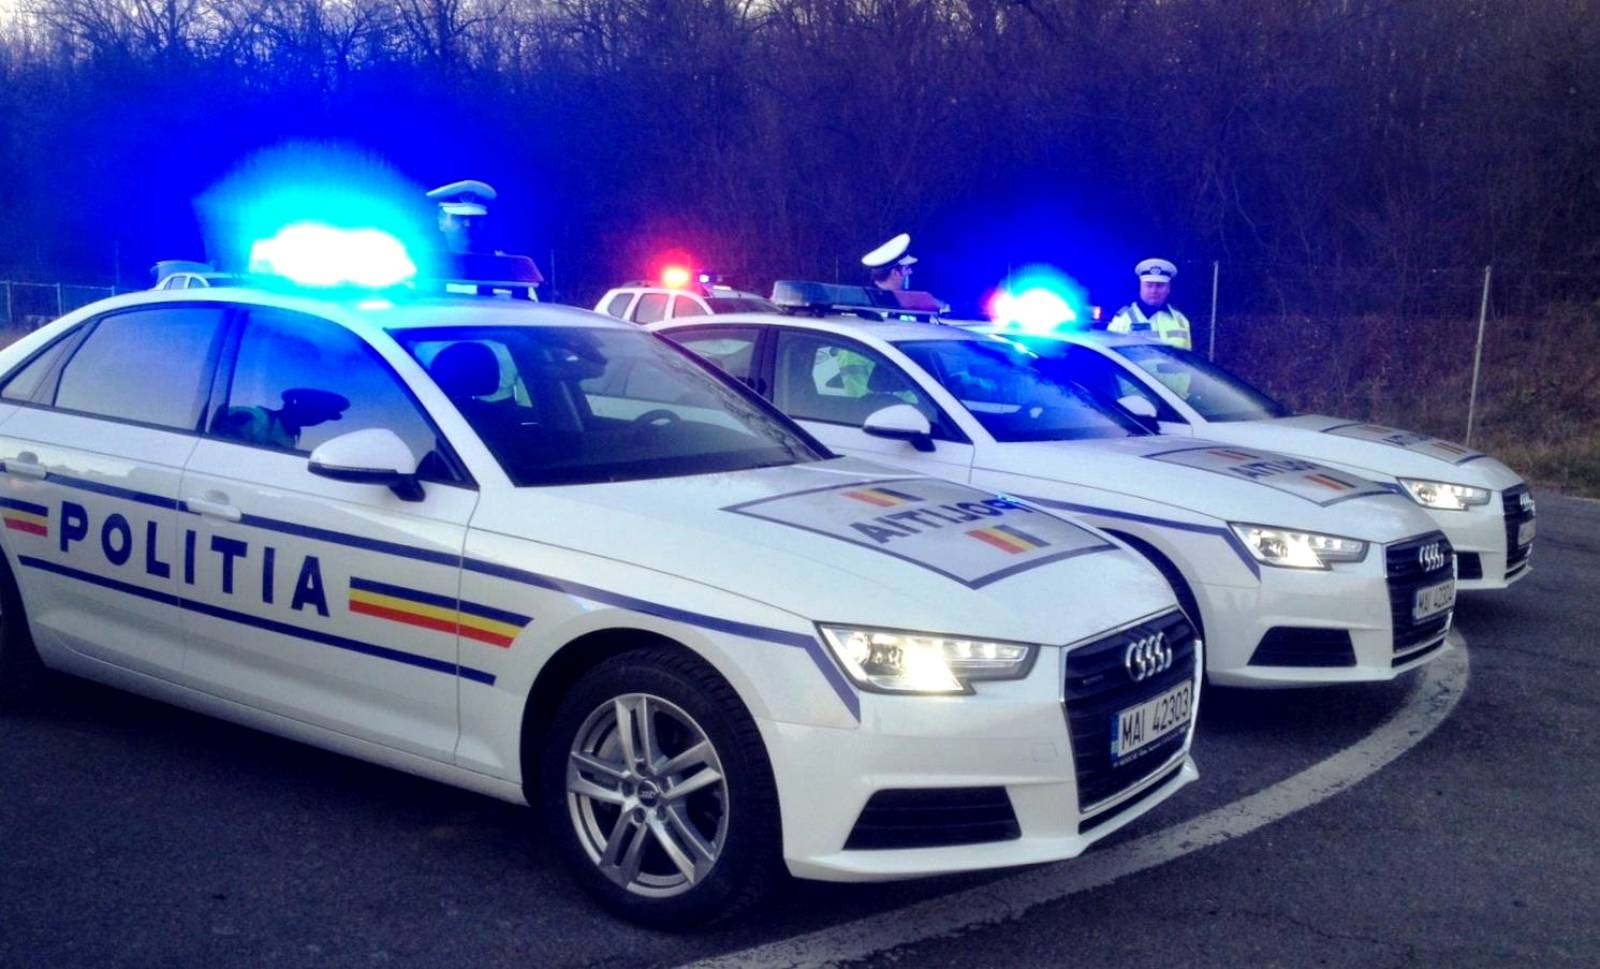 Stato di emergenza della polizia rumena di Rovinia